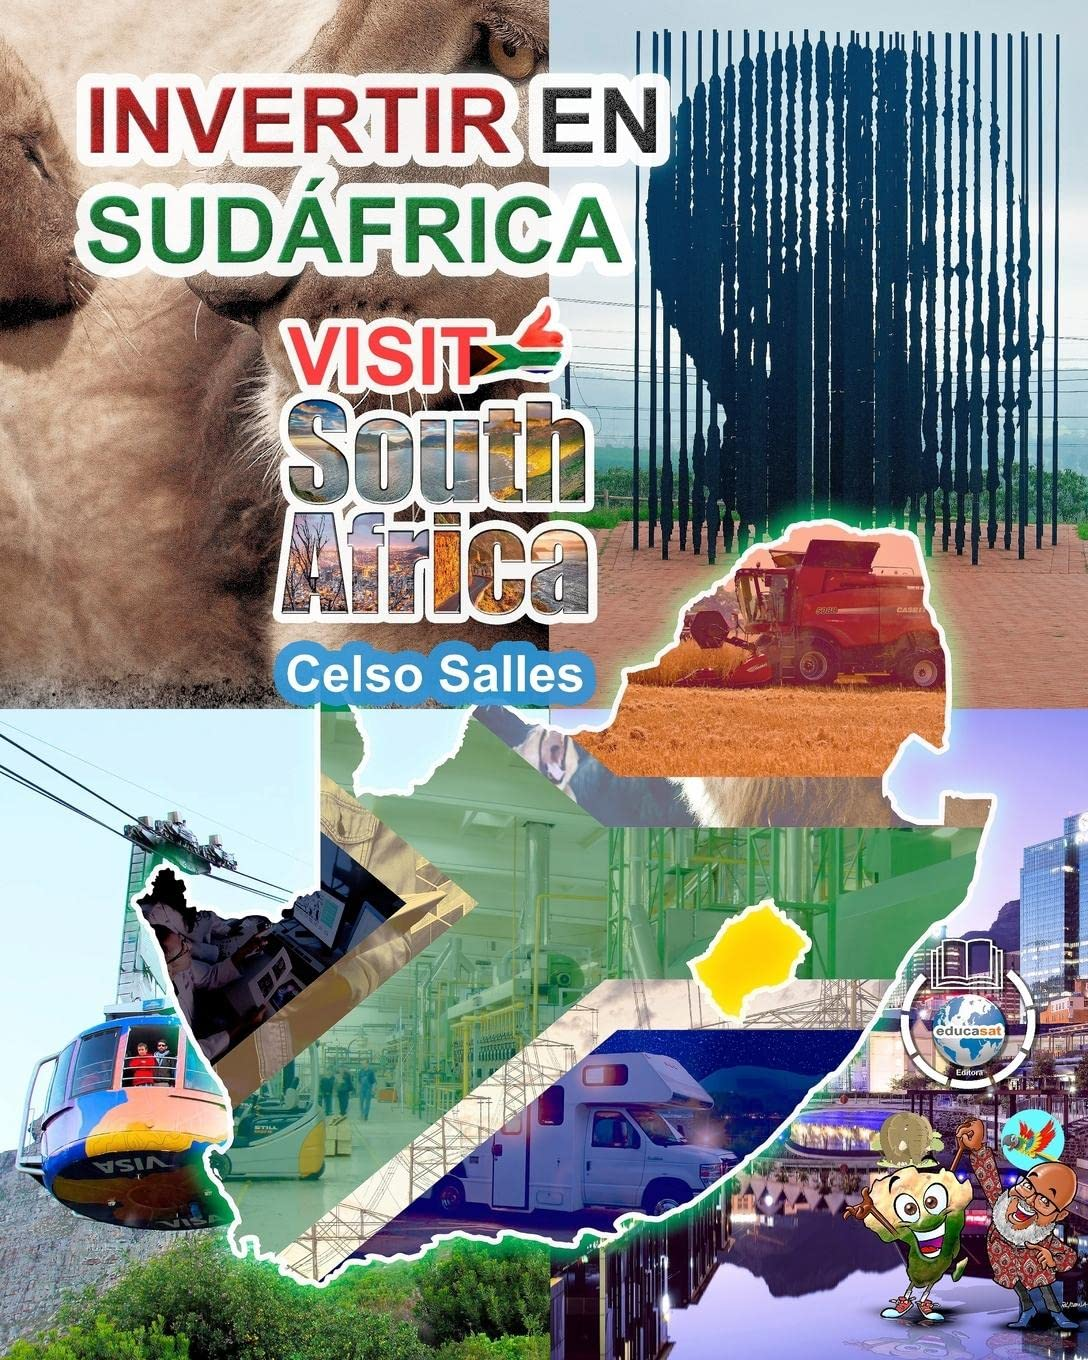 INVERTIR EN SUDÁFRICA - VISIT SOUTH AFRICA - Celso Salles: Colección Invertir en África